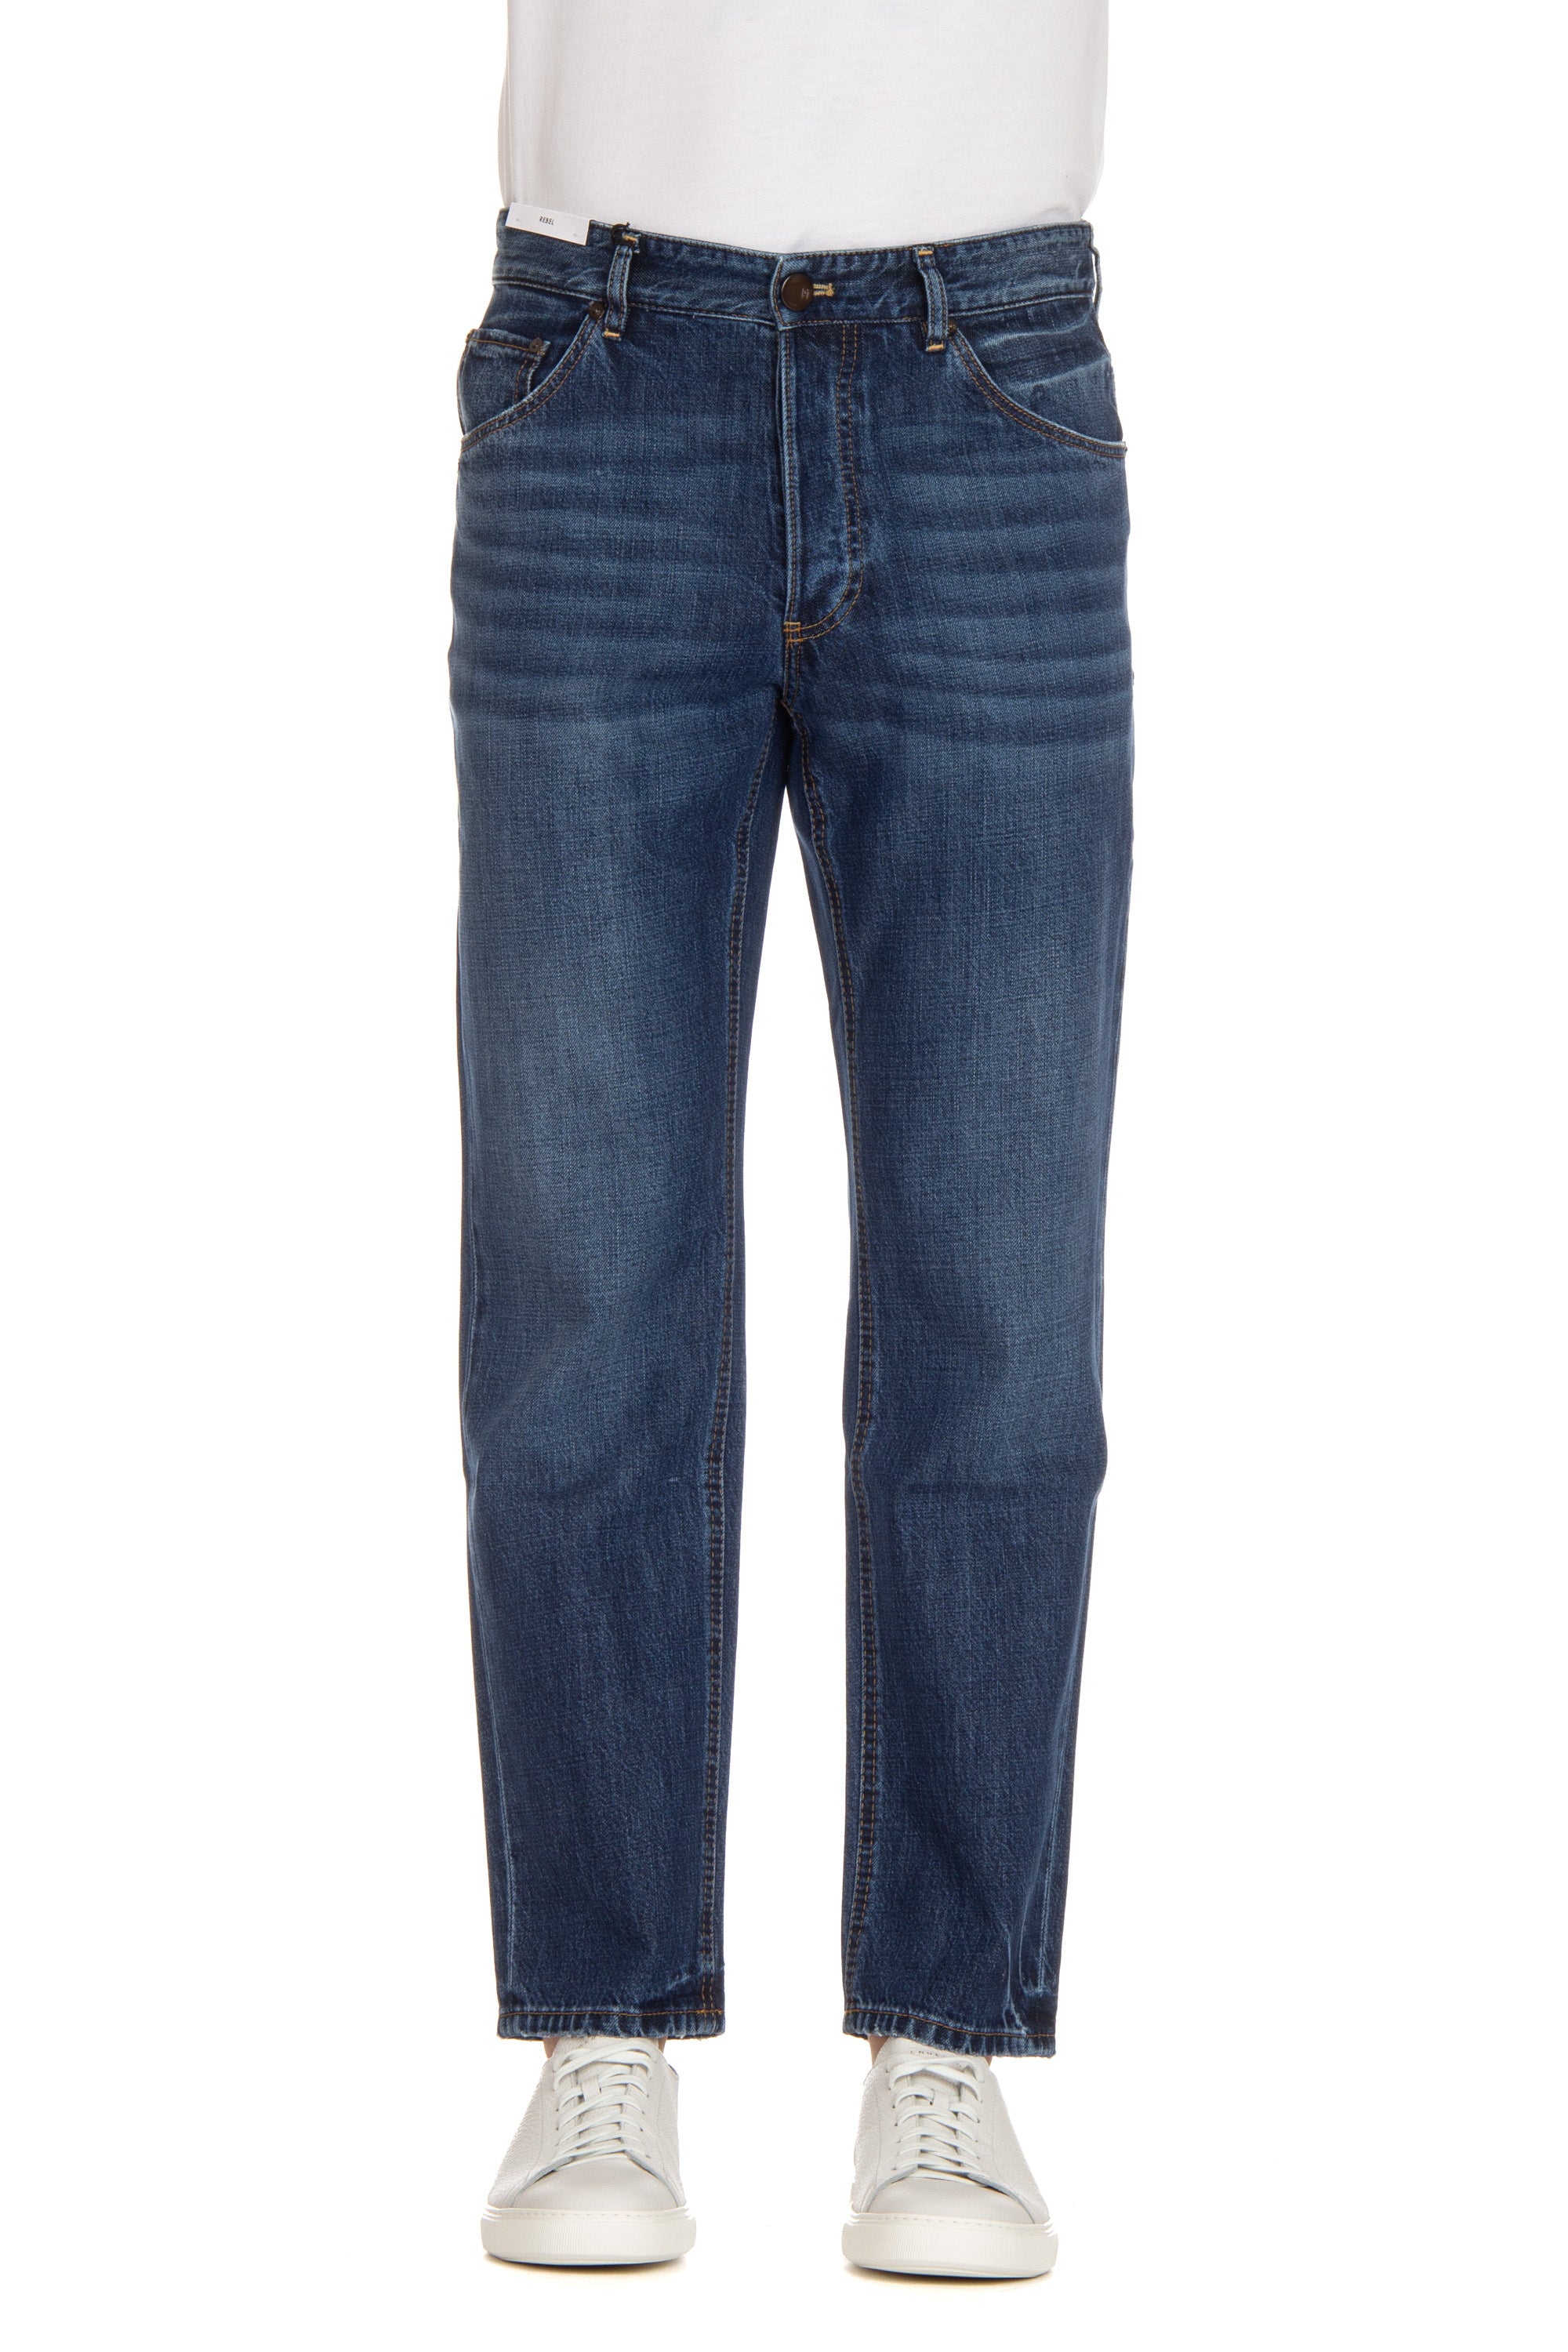 Rebel fit cotton-lyocel jeans